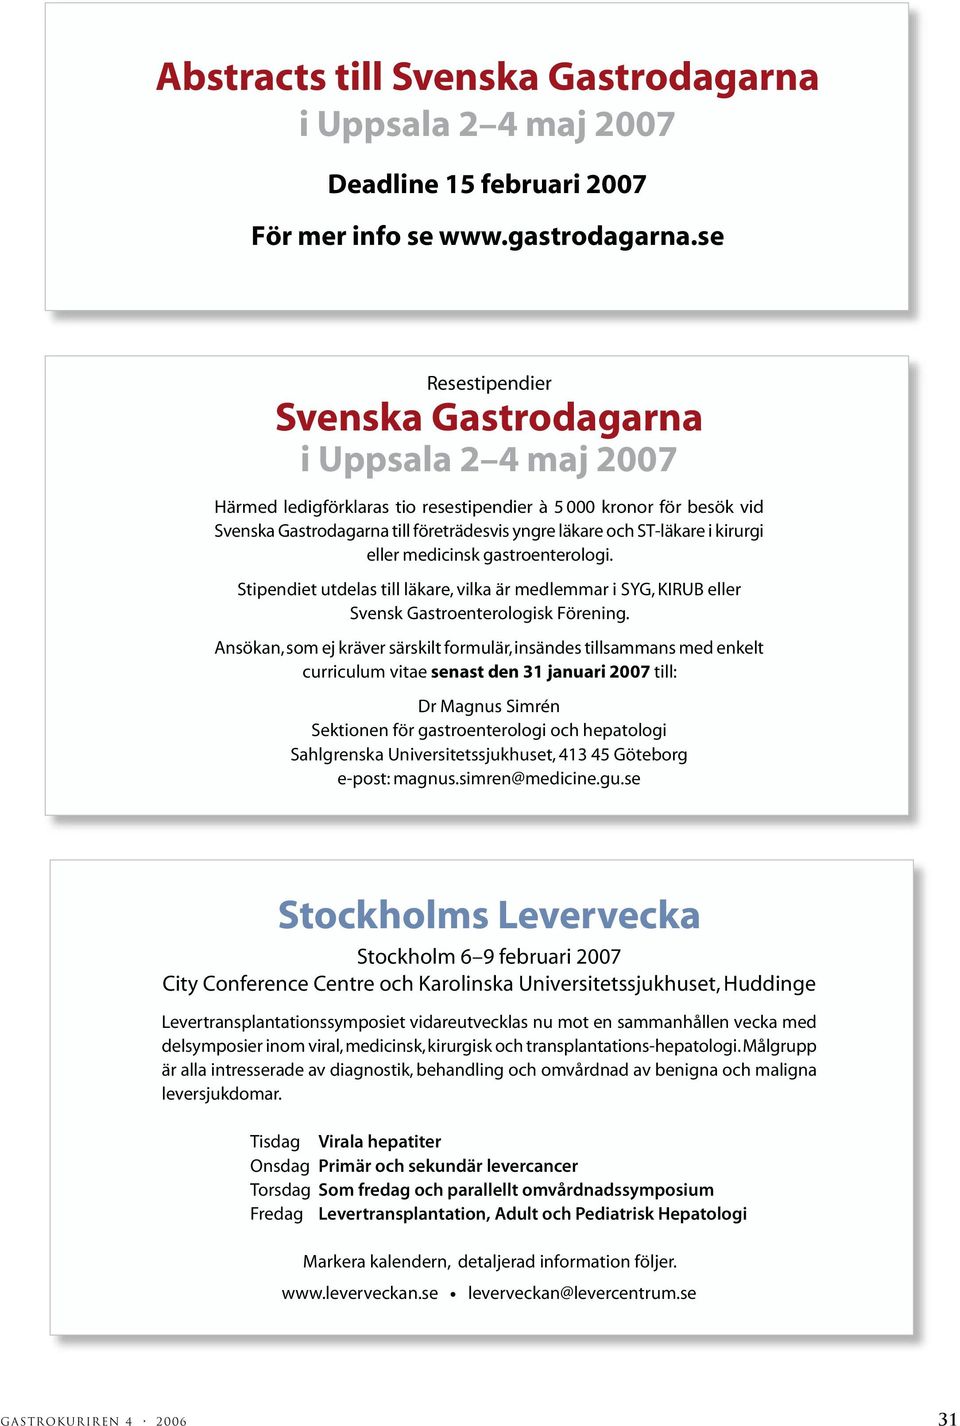 ST-läkare i kirurgi eller medicinsk gastroenterologi. Stipendiet utdelas till läkare, vilka är medlemmar i SYG, KIRUB eller Svensk Gastroenterologisk Förening.